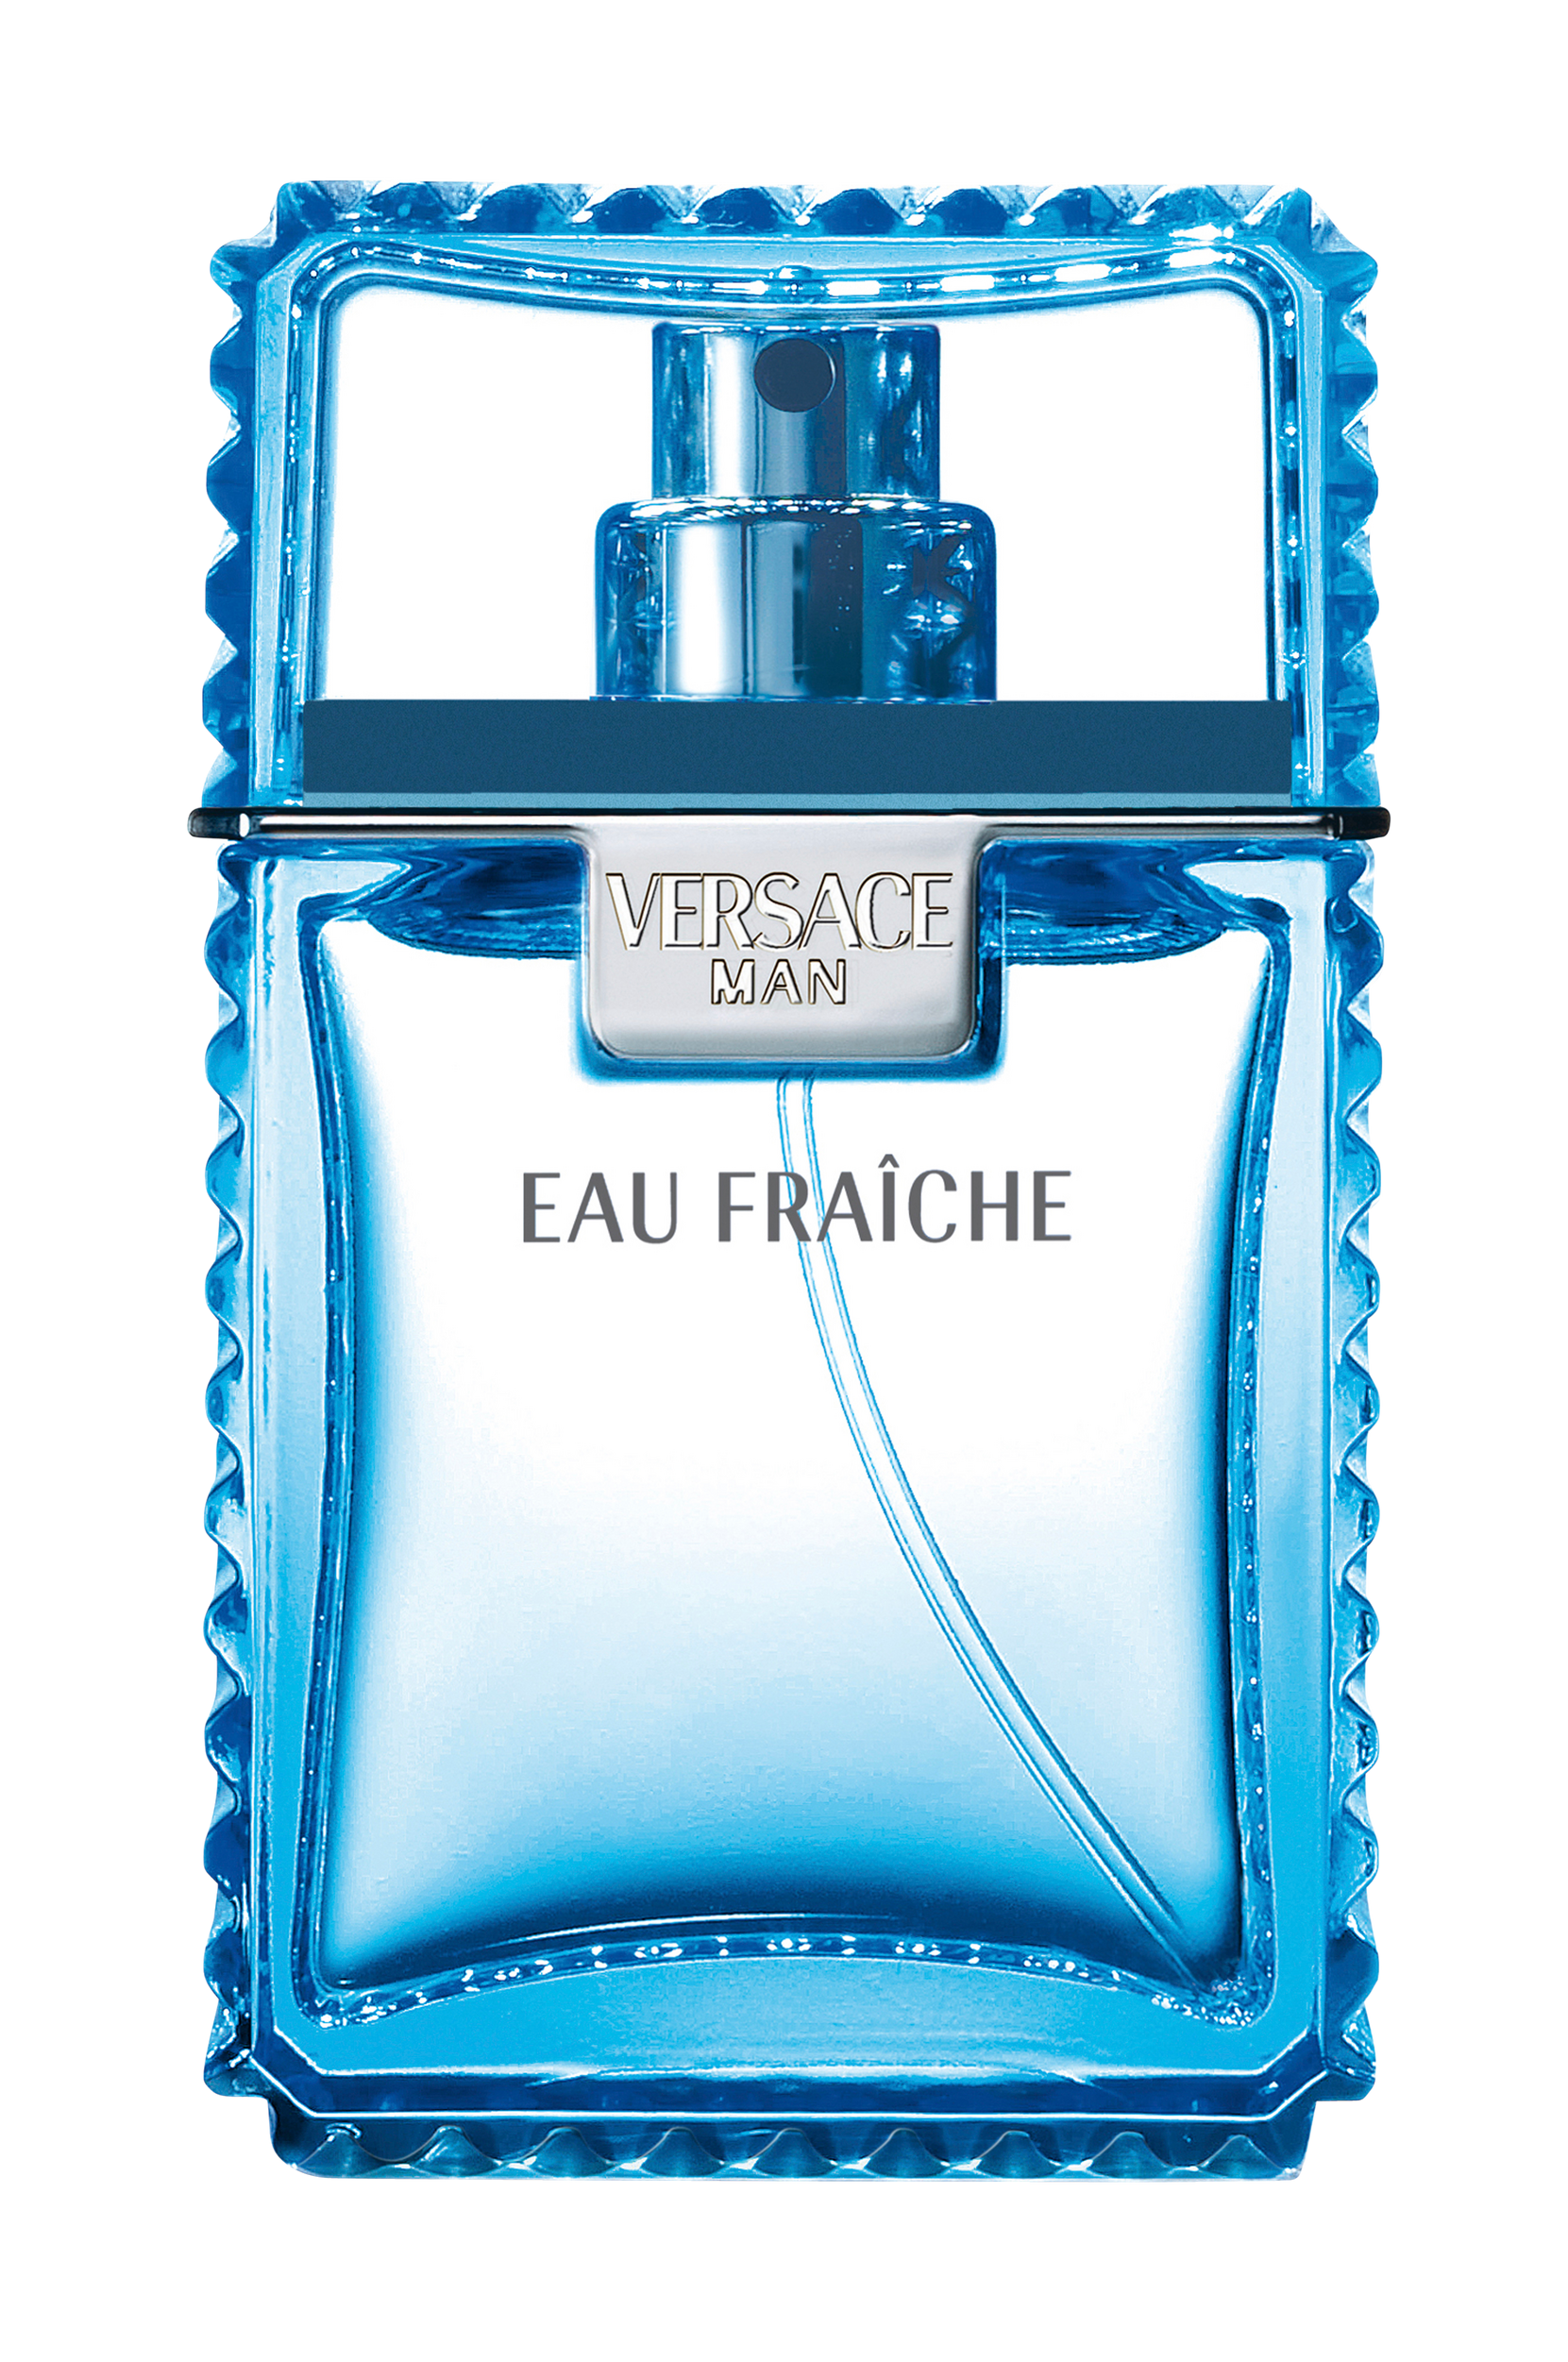 Man Eau Fraiche EdT 30 ml, Versace